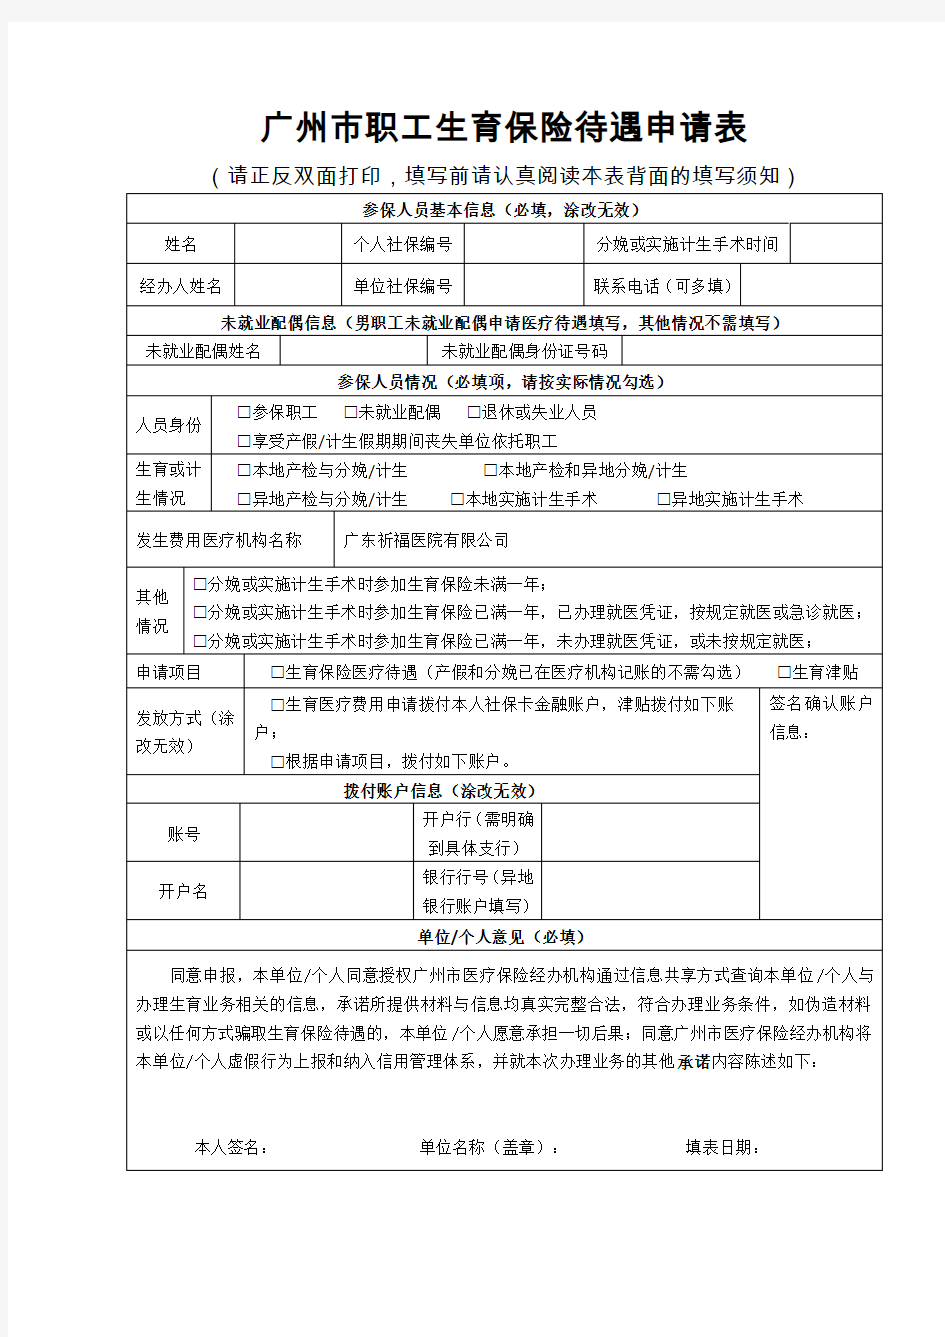 广州市职工生育保险待遇申请表(2020年最新版)